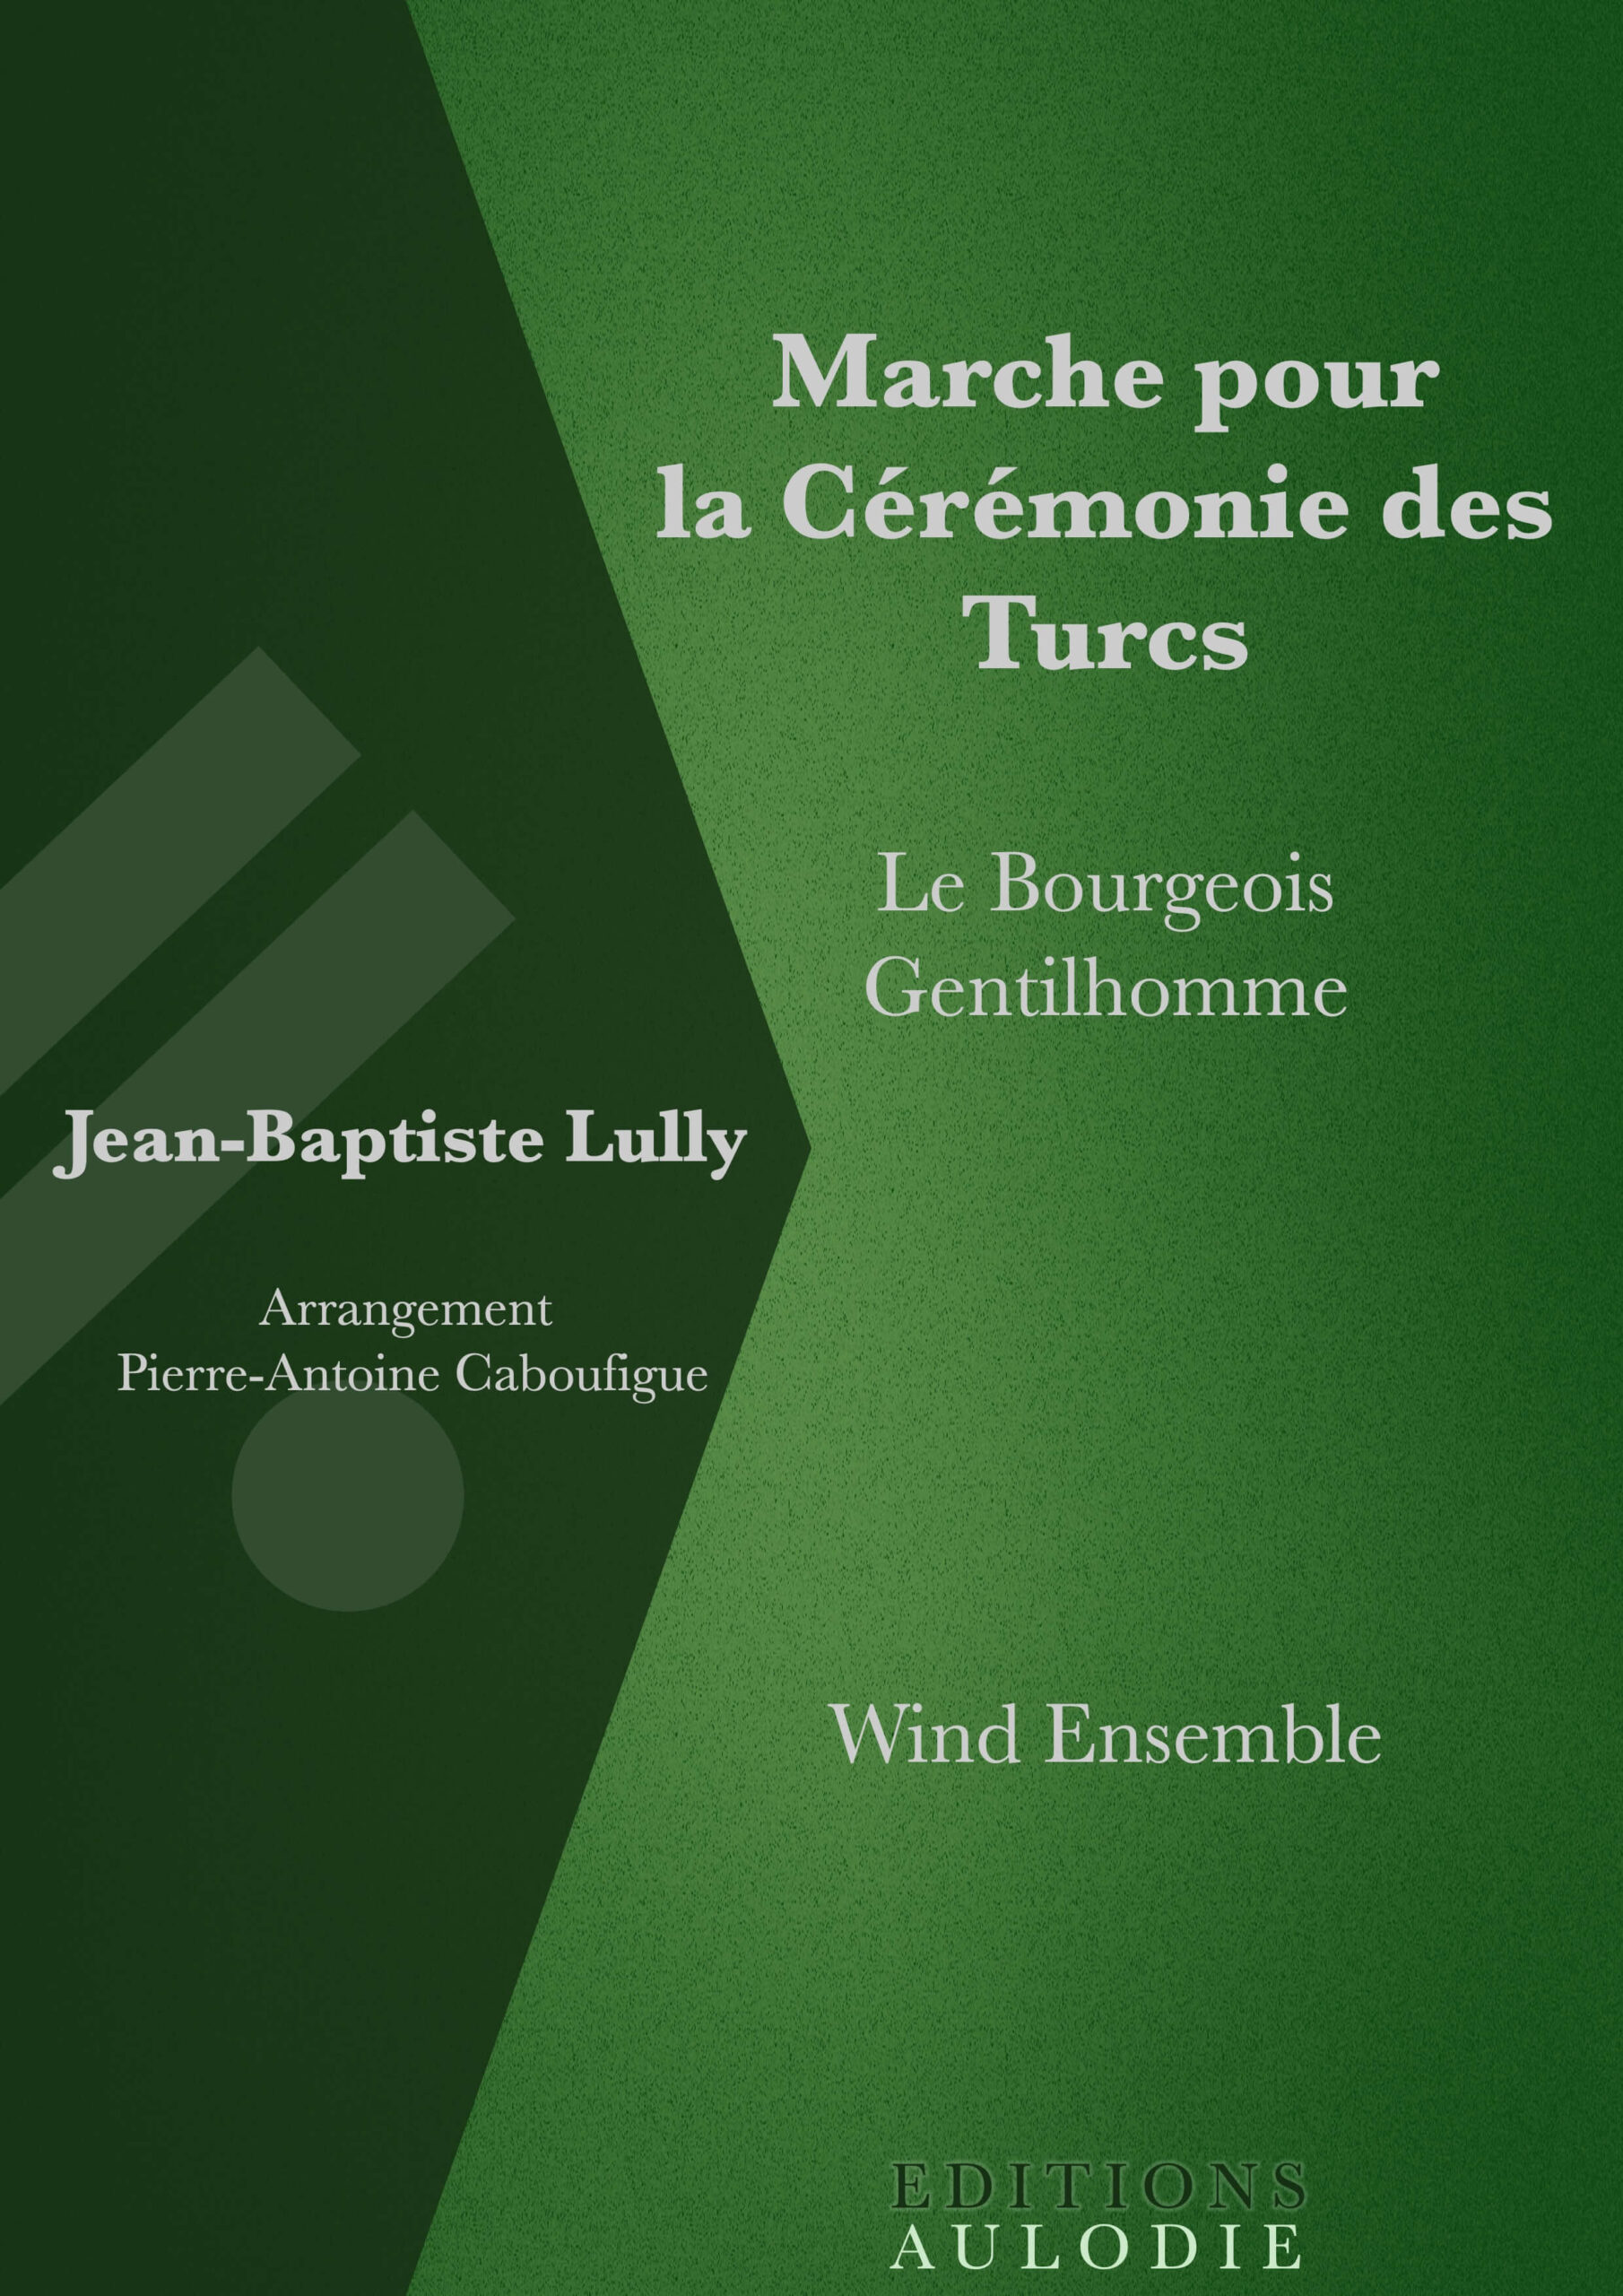 EA01046-Marche_pour_la_Ceremonie_des_Turcs-Le_Bourgeois_Gentilhomme-Jean-Baptiste_Lully-Wind_Ensemble